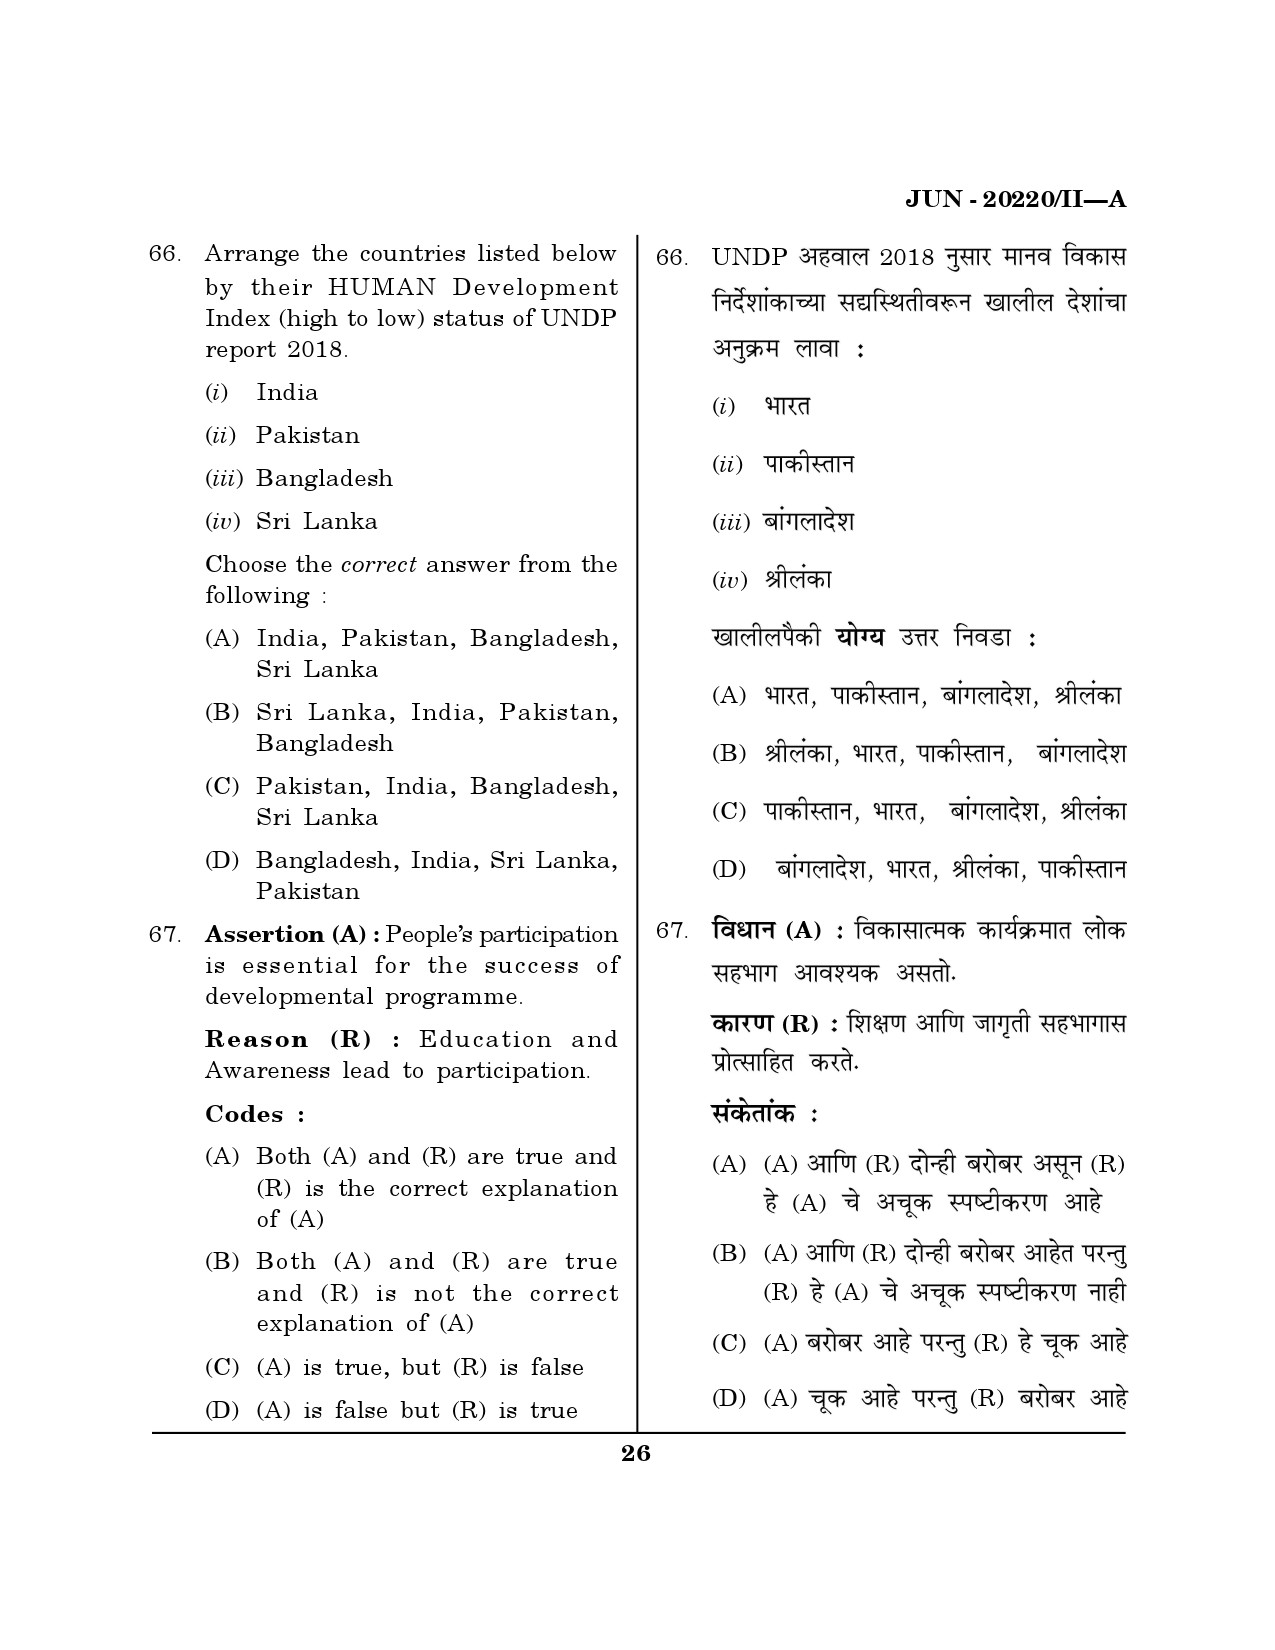 Maharashtra SET Social Work Question Paper II June 2020 25